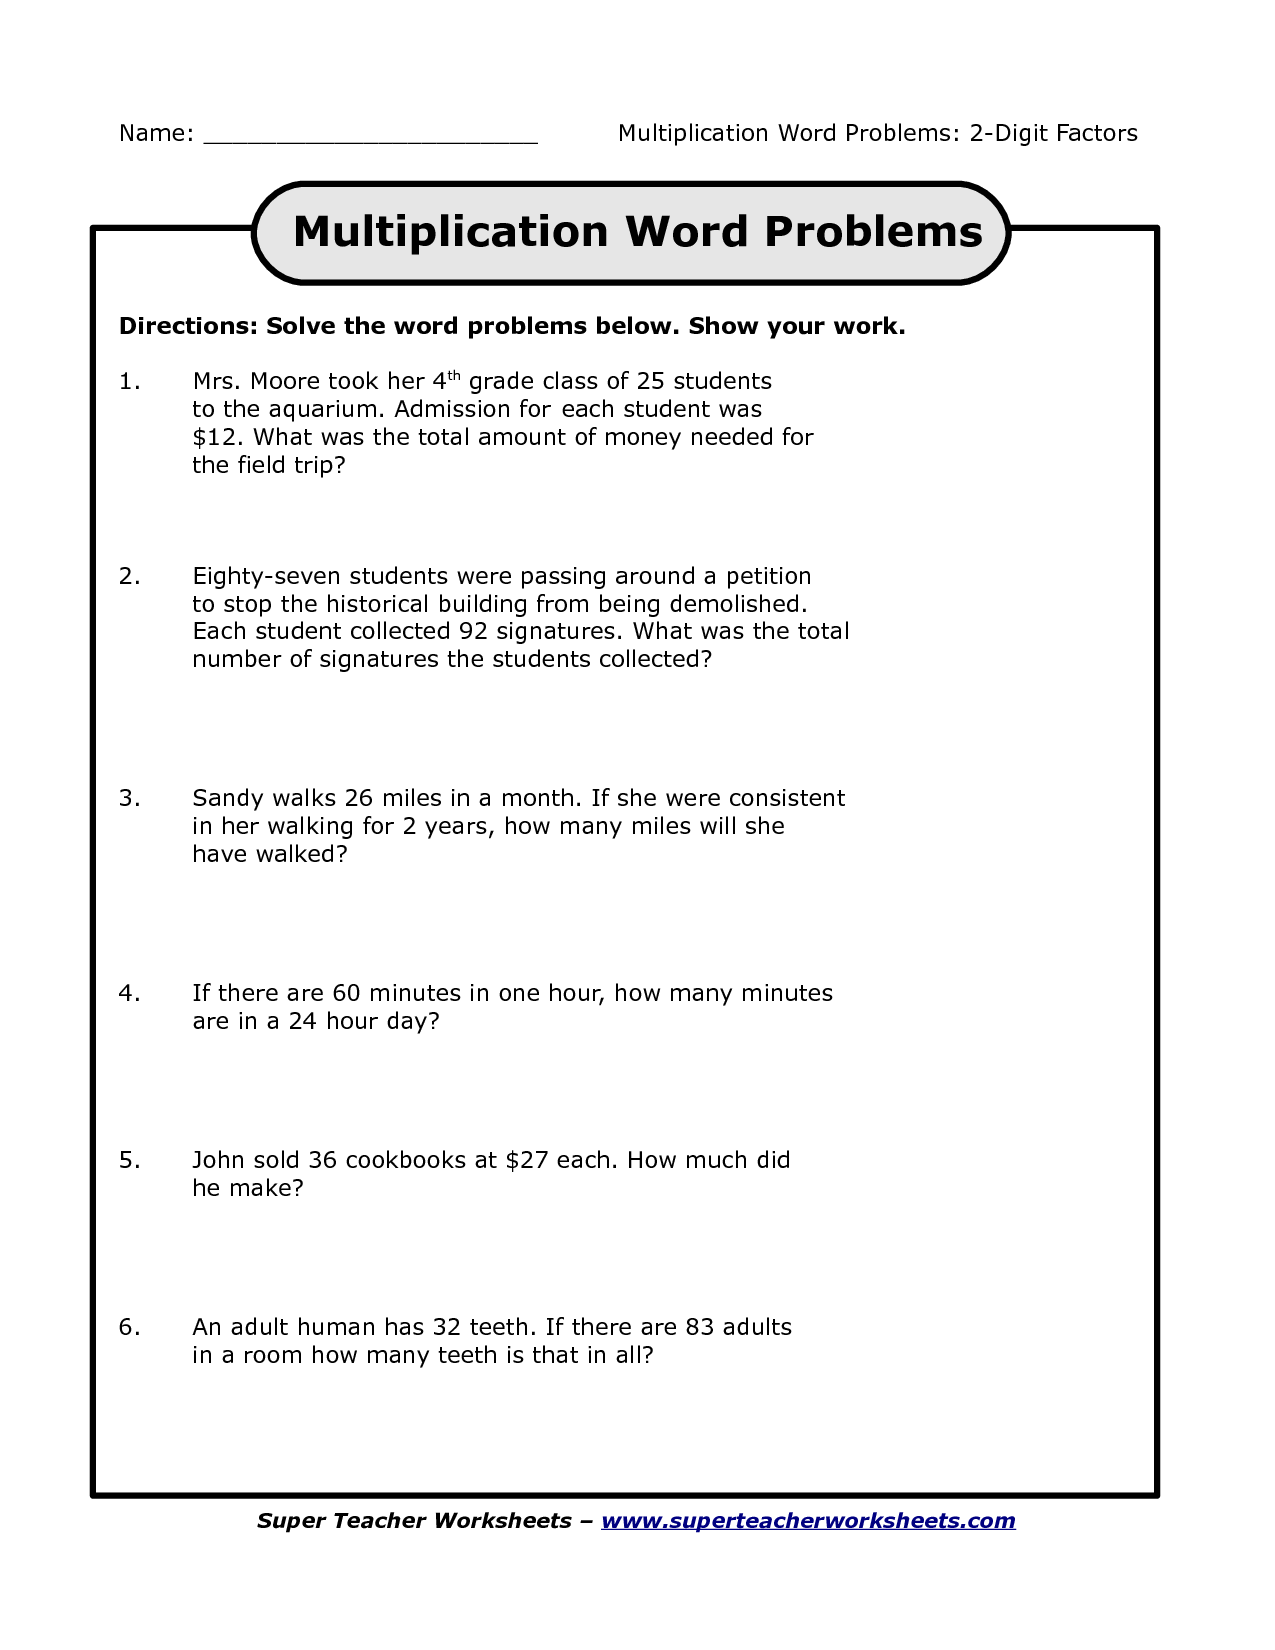 problem-solving-4th-grade-problem-solving-4th-grade-worksheets-2019-02-03